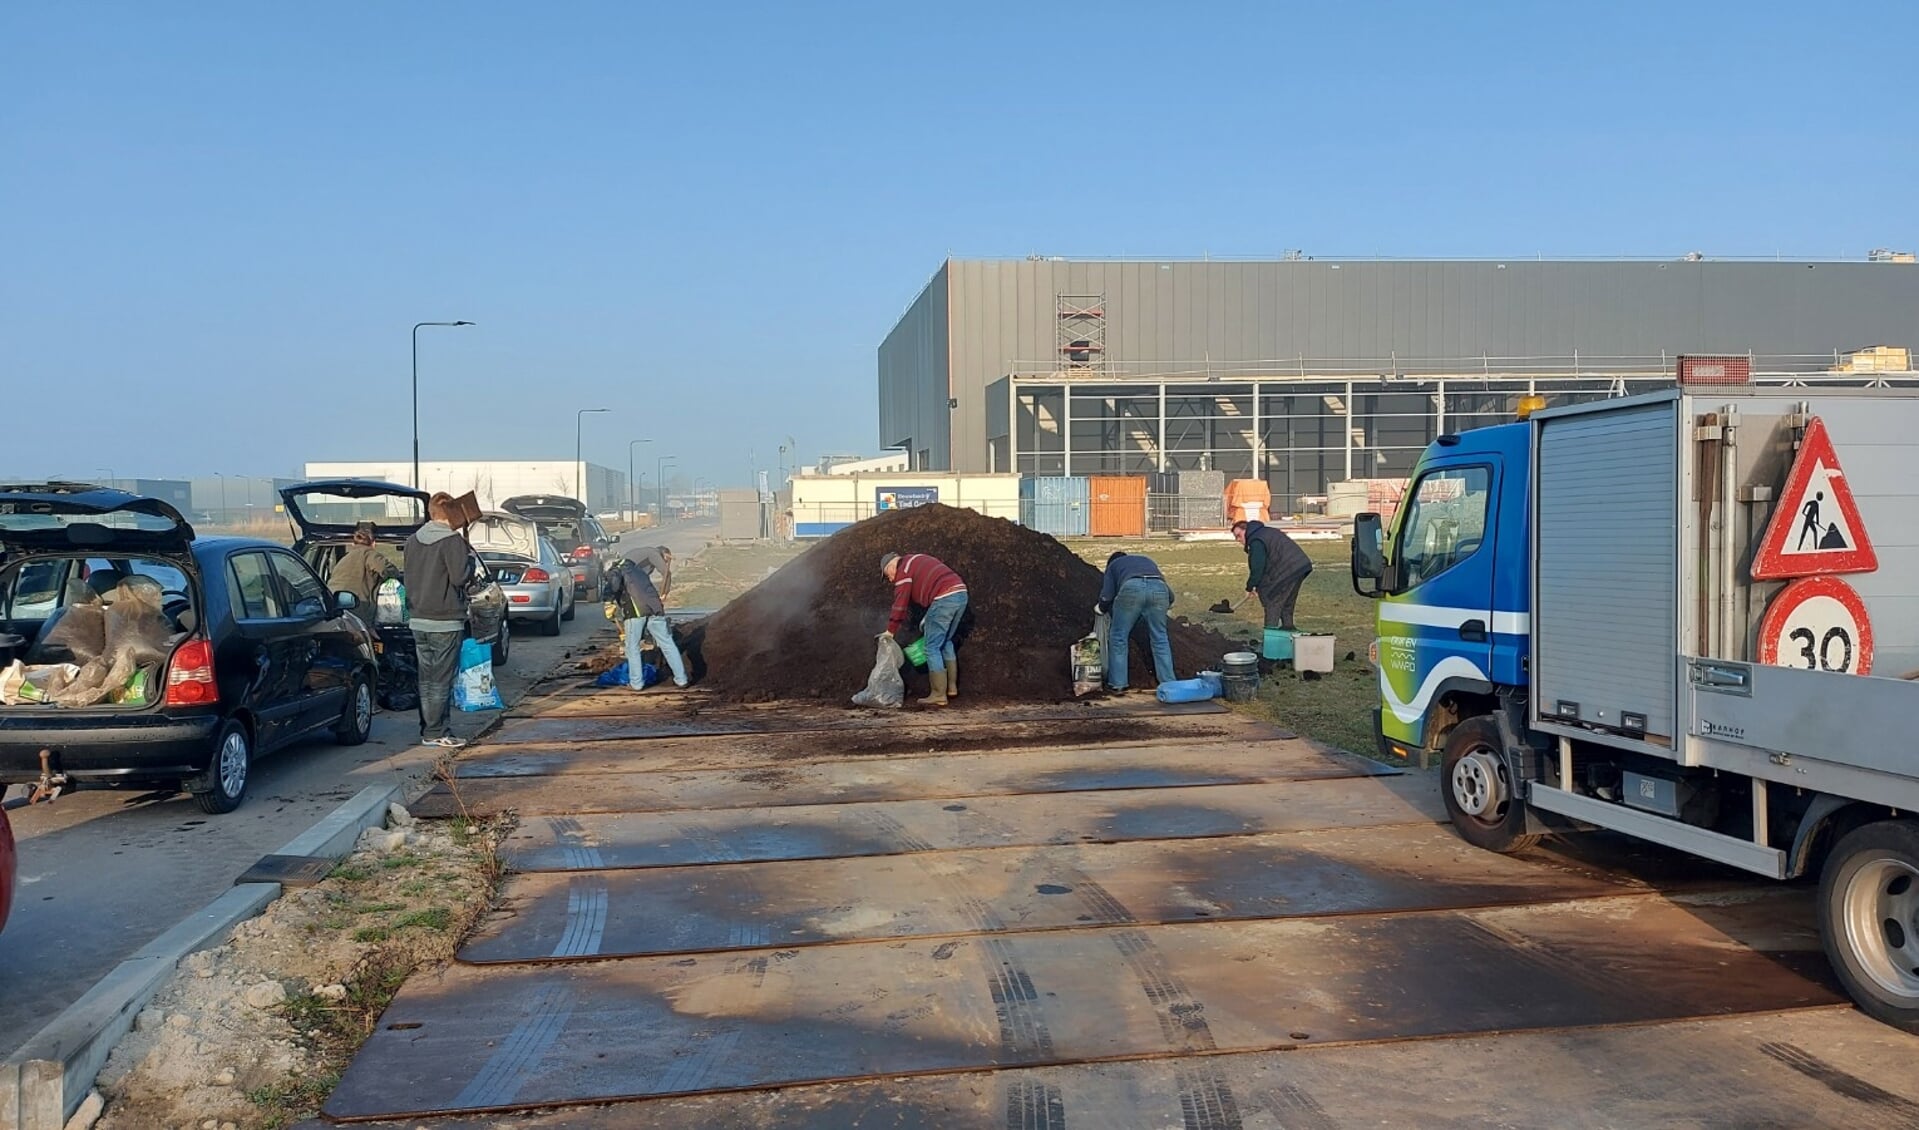 Gratis compost scheppen kan zaterdag 25 maart in Heerhugowaard. 